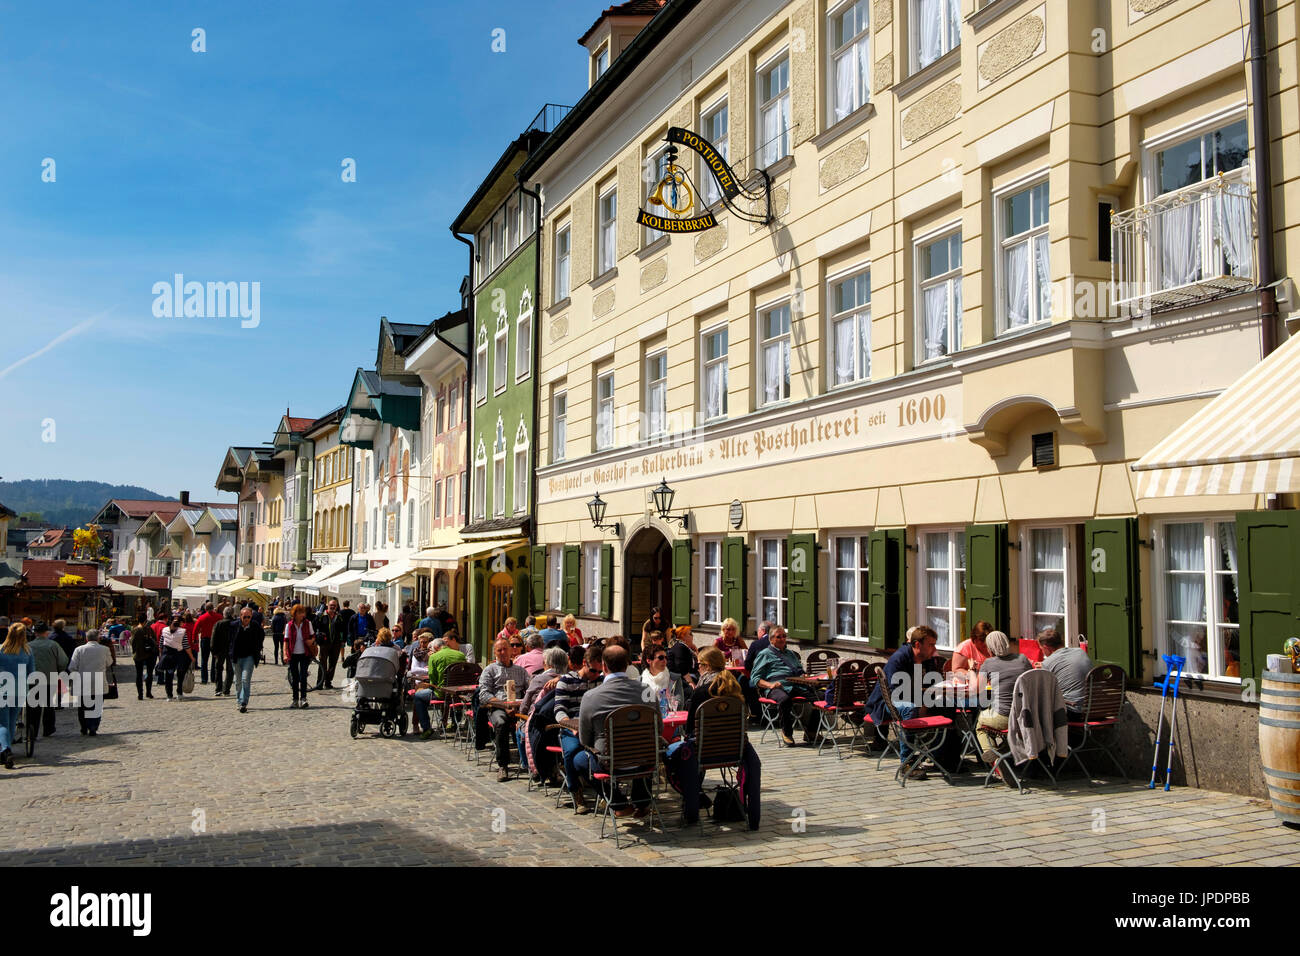 La gente seduta in taverna nella parte anteriore della fila di case storiche, Marktstraße, Bad Tolz, Alta Baviera, Baviera, Germania Foto Stock